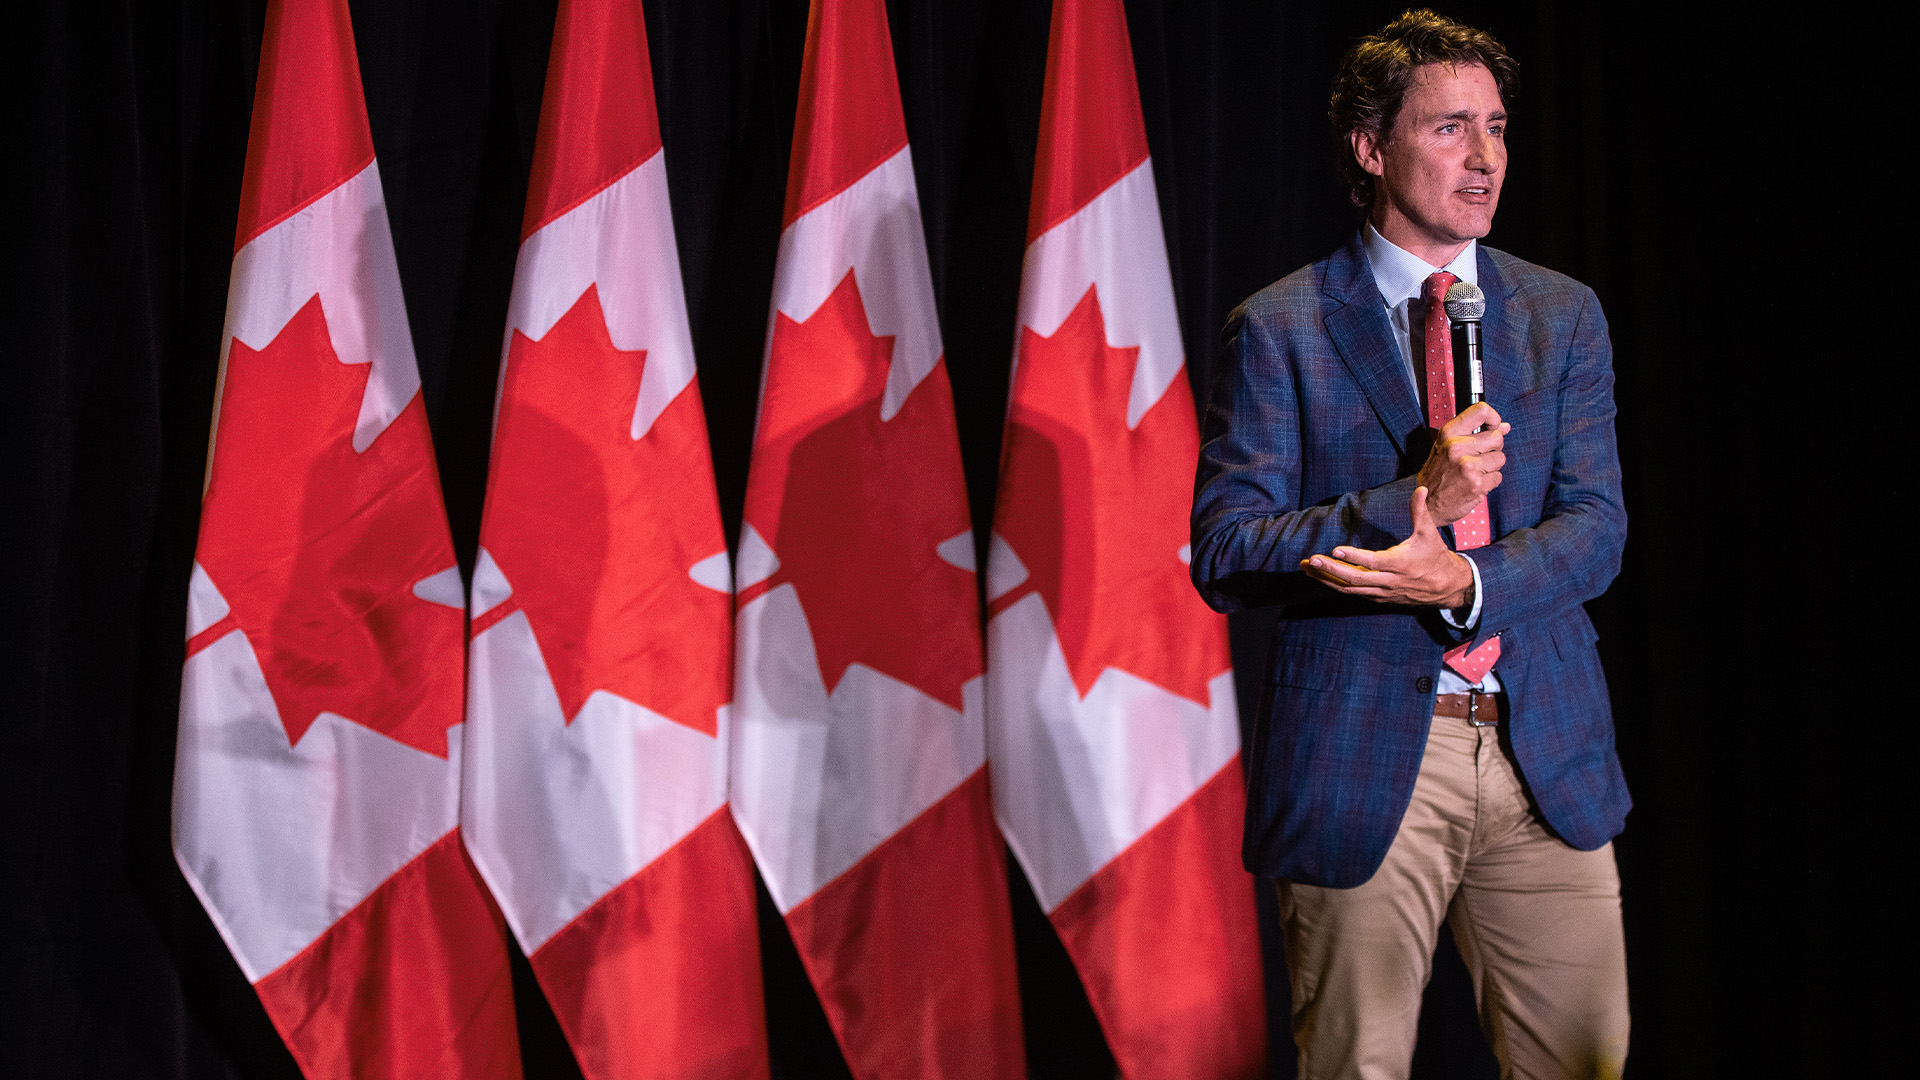 Selon un communiqué de presse, M. Trudeau passera ainsi deux jours dans chaque pays, en mettant l'accent sur la promotion du commerce et de l'abordabilité.